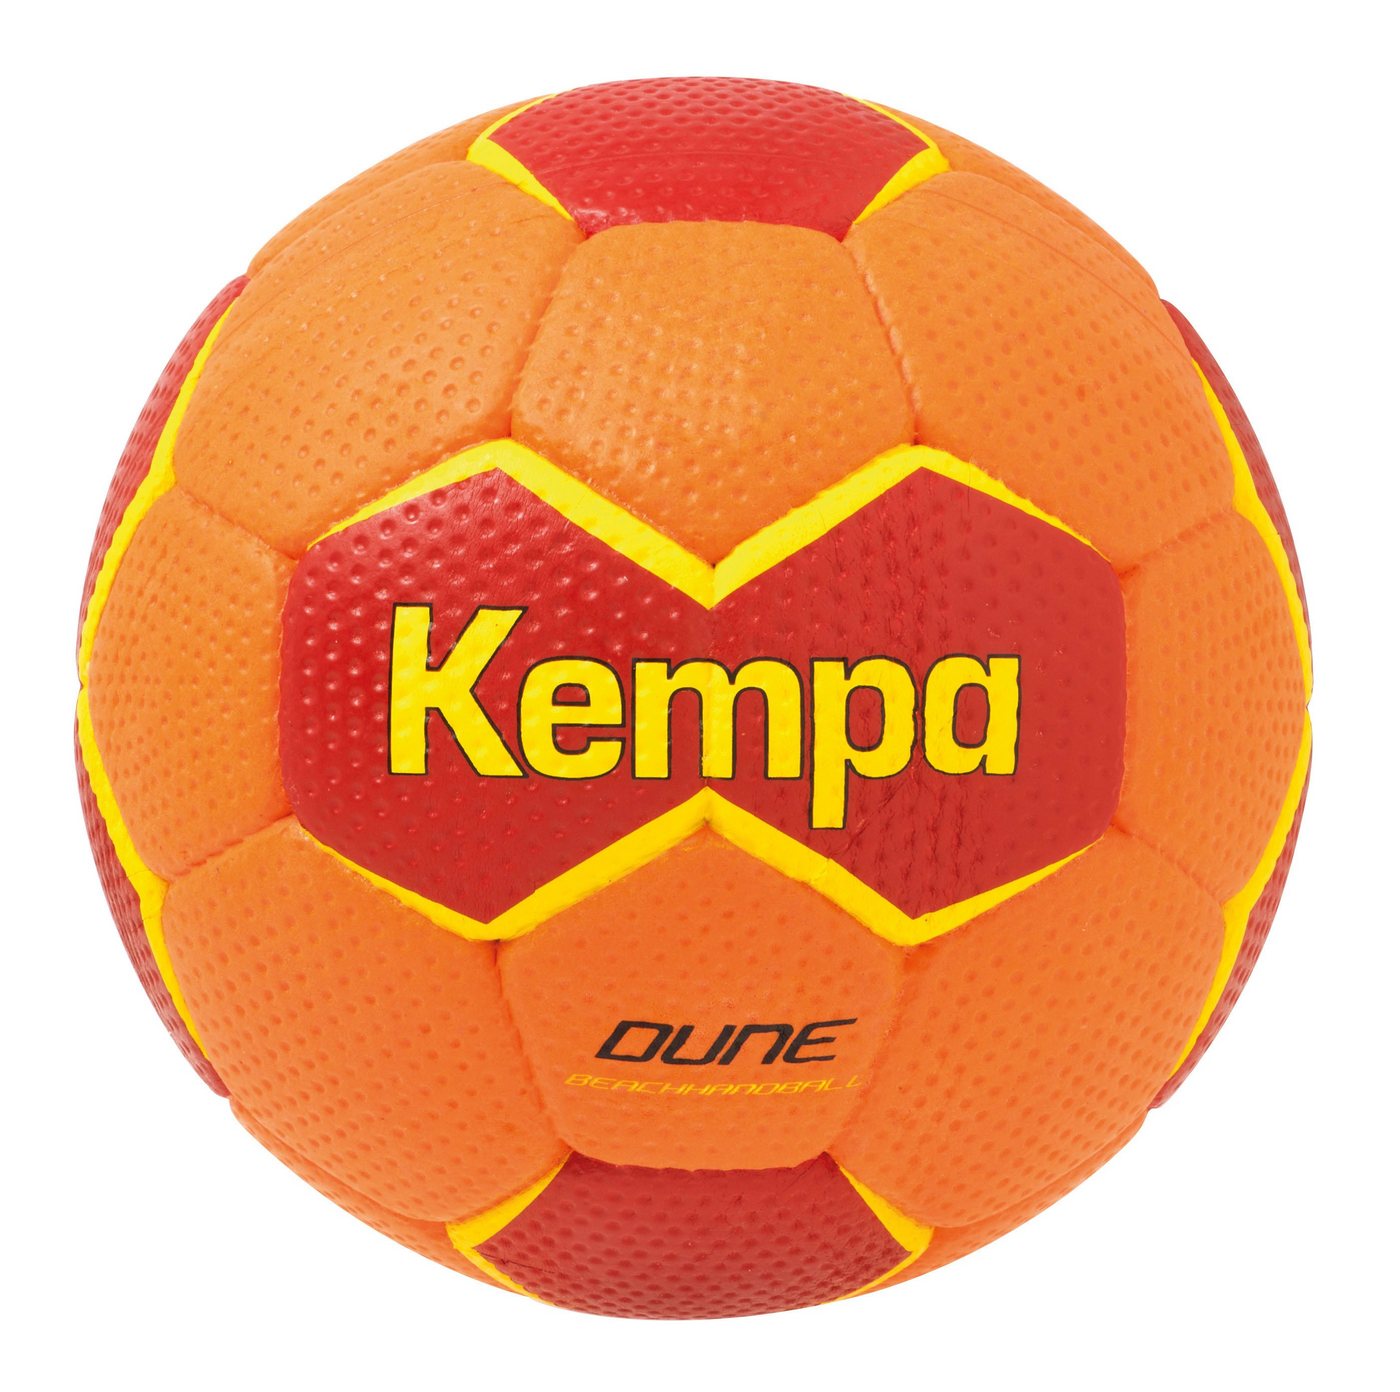 Kempa Handball Handball DUNE (Beach) von Kempa